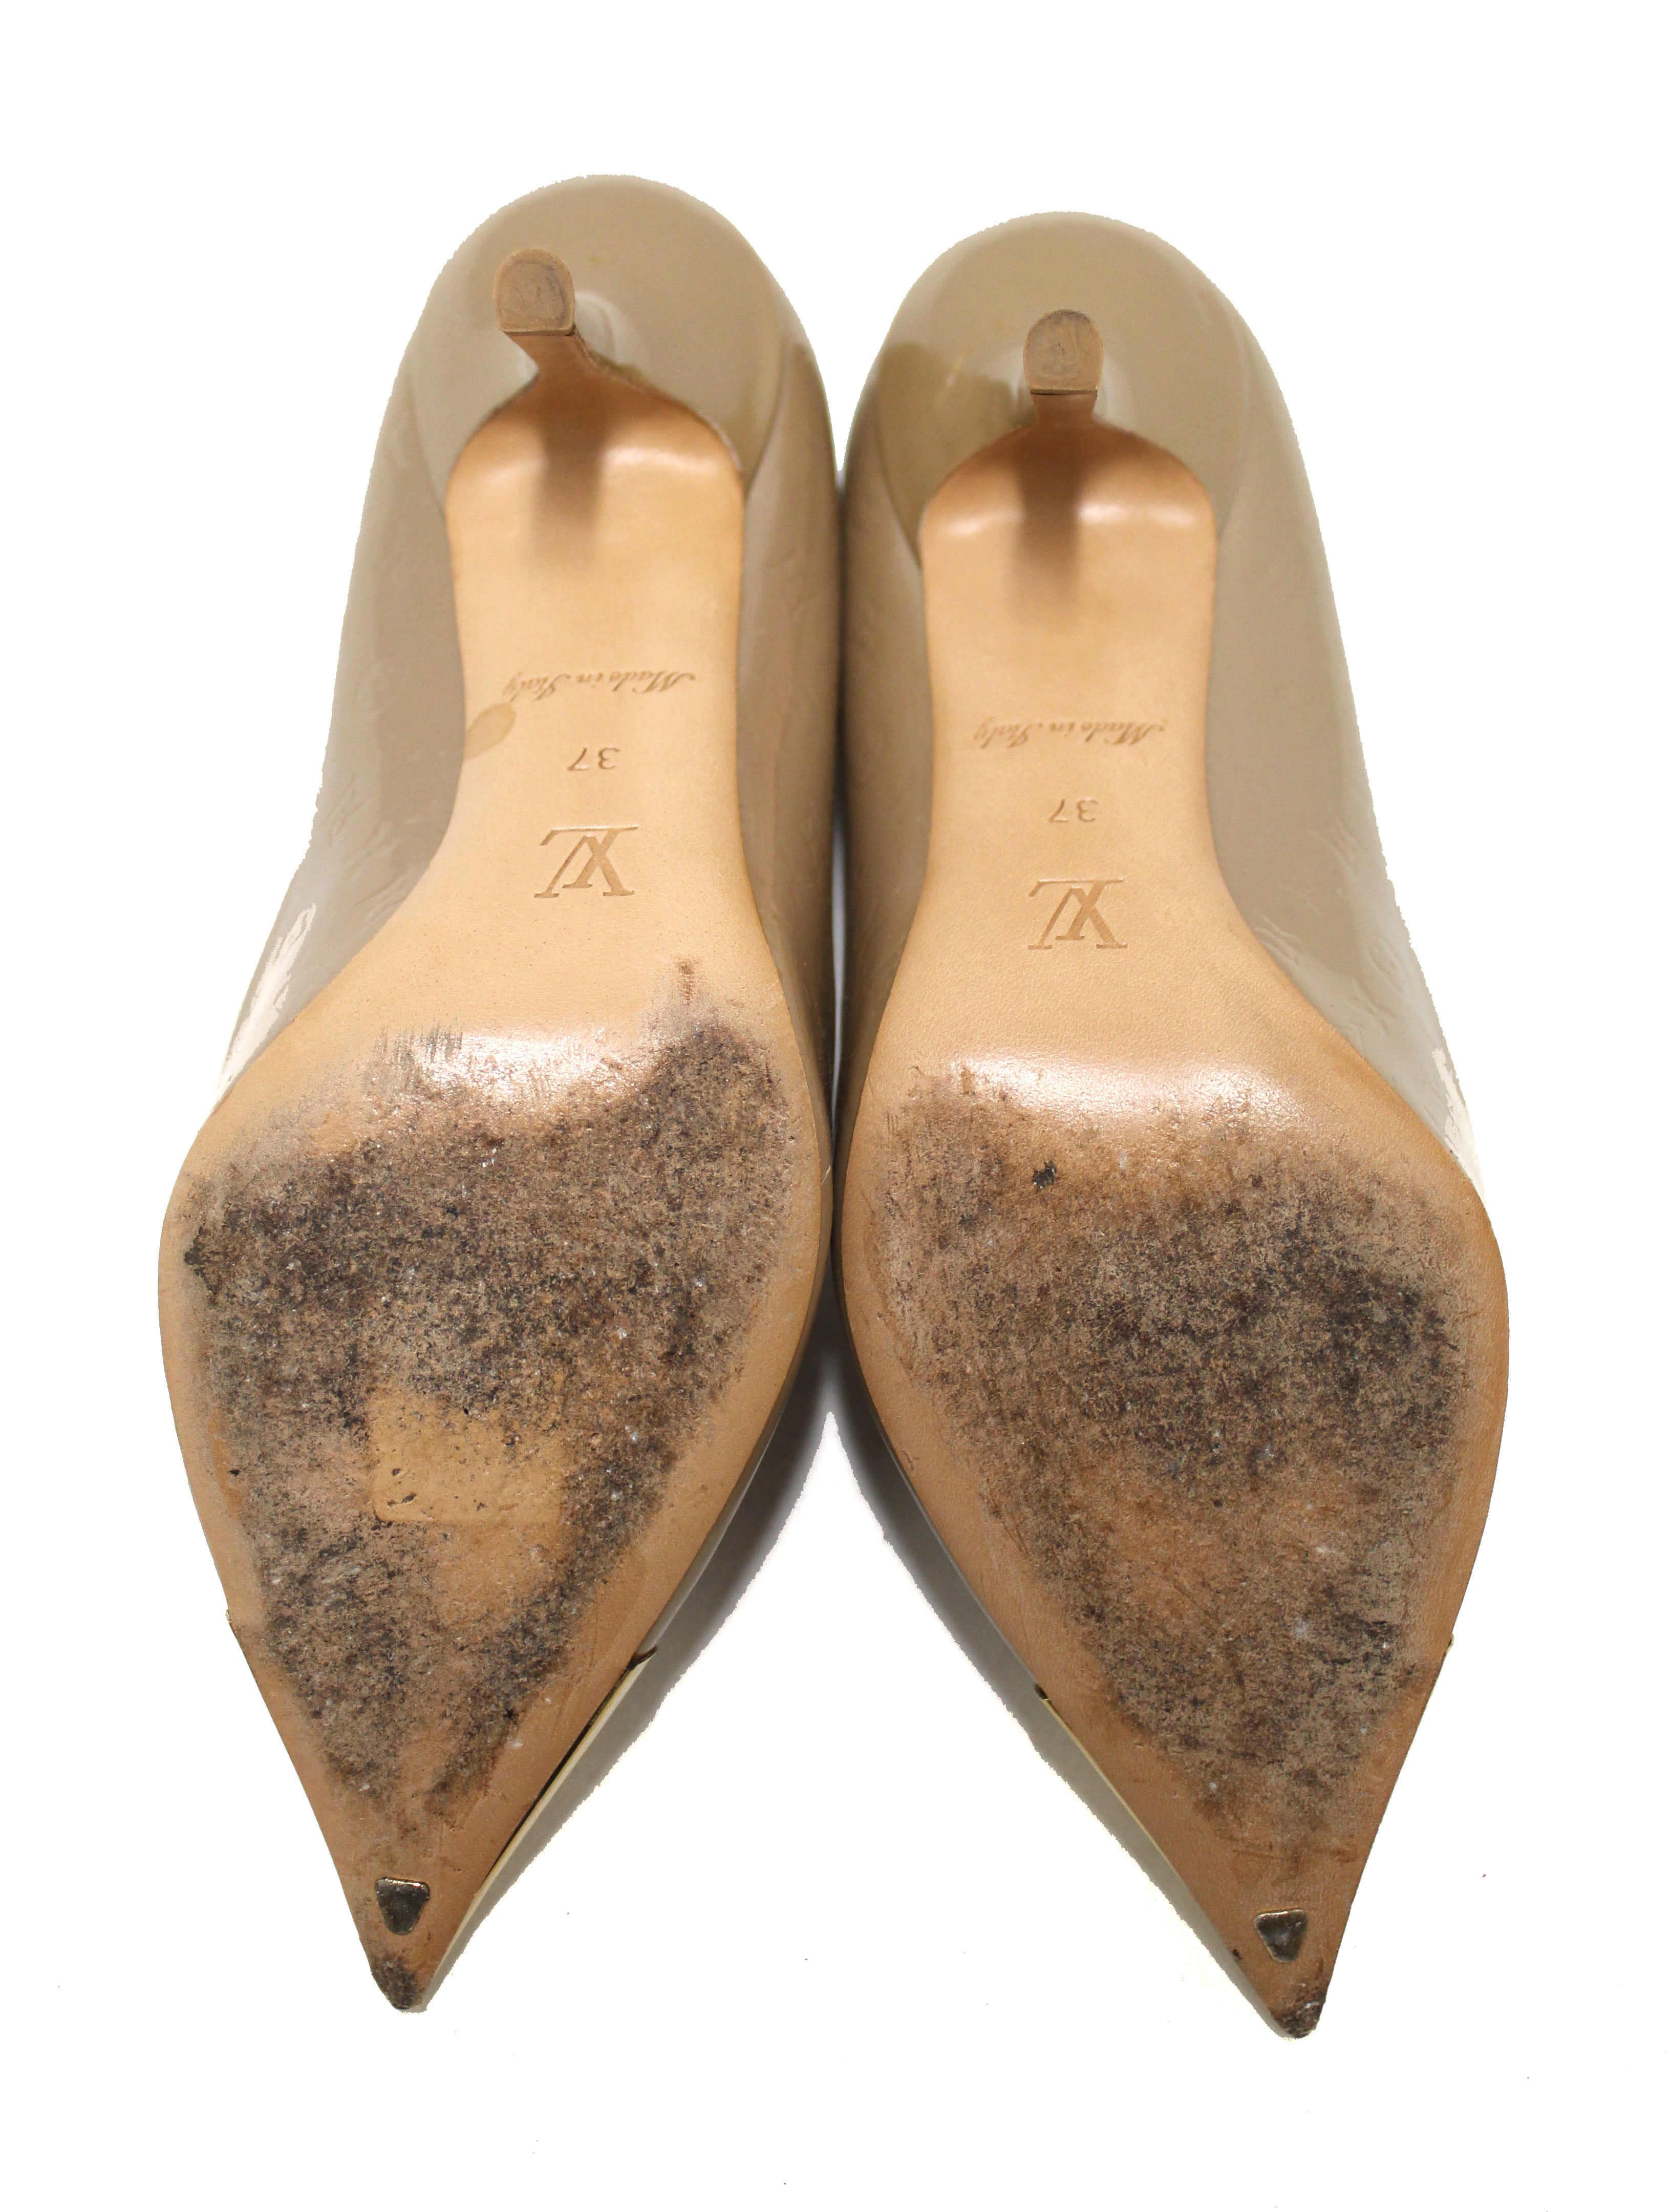 Authentic Louis Vuitton Beige Patent Leather Twist Pump Shoes Size 37